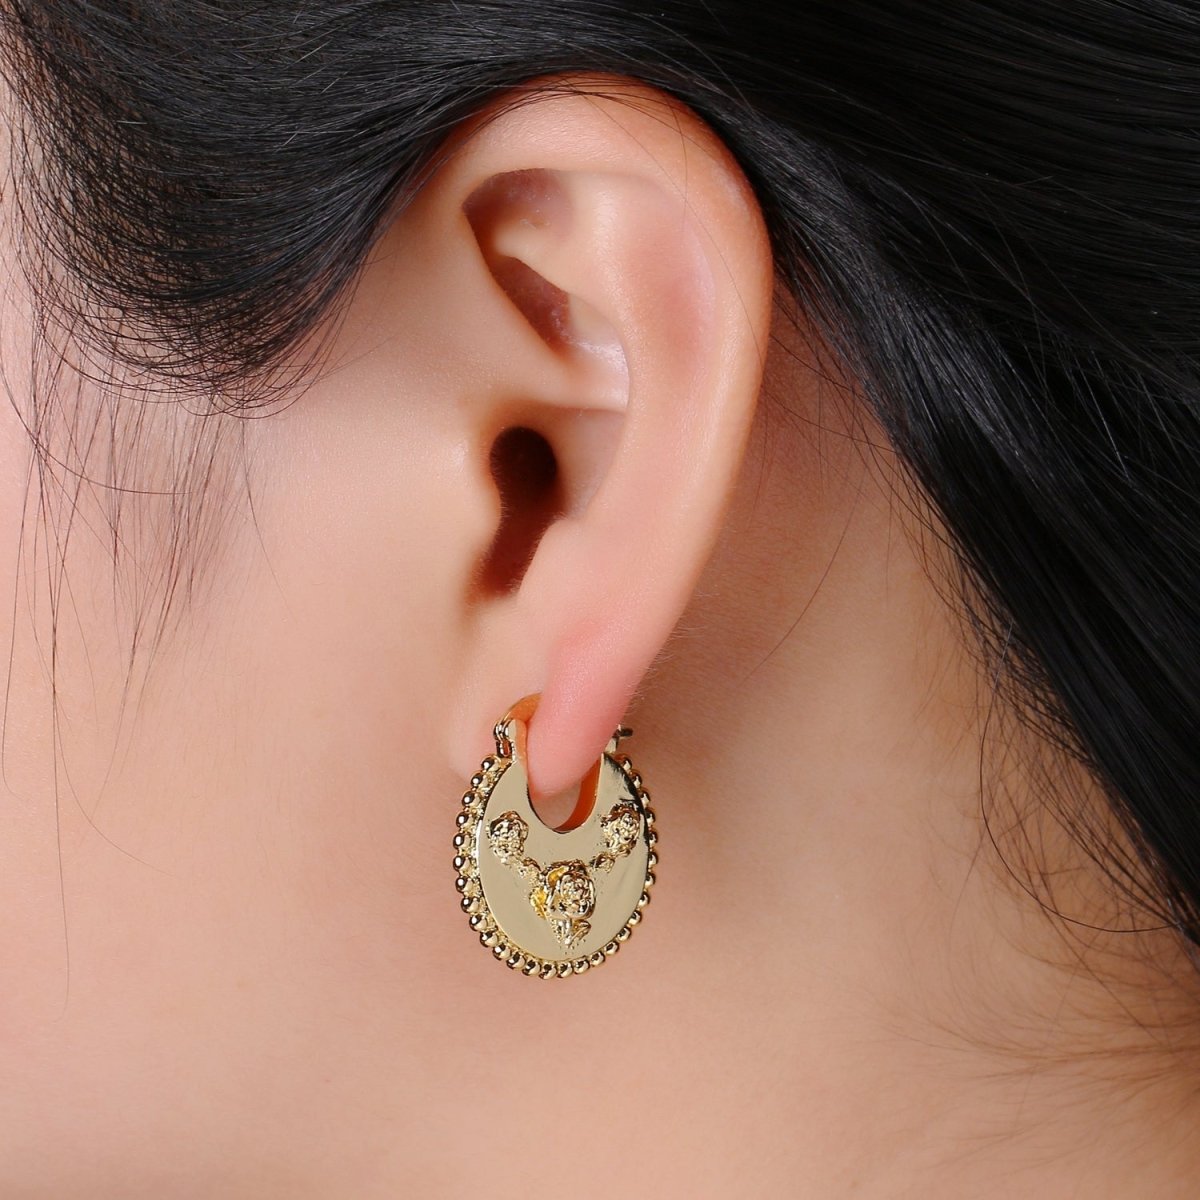 Big Statement Gold Earrings, Gold Fan Earrings, Large Gold Earrings, Women Big Earrings Rose Flower Floral Design Jewelry Q-336 - DLUXCA